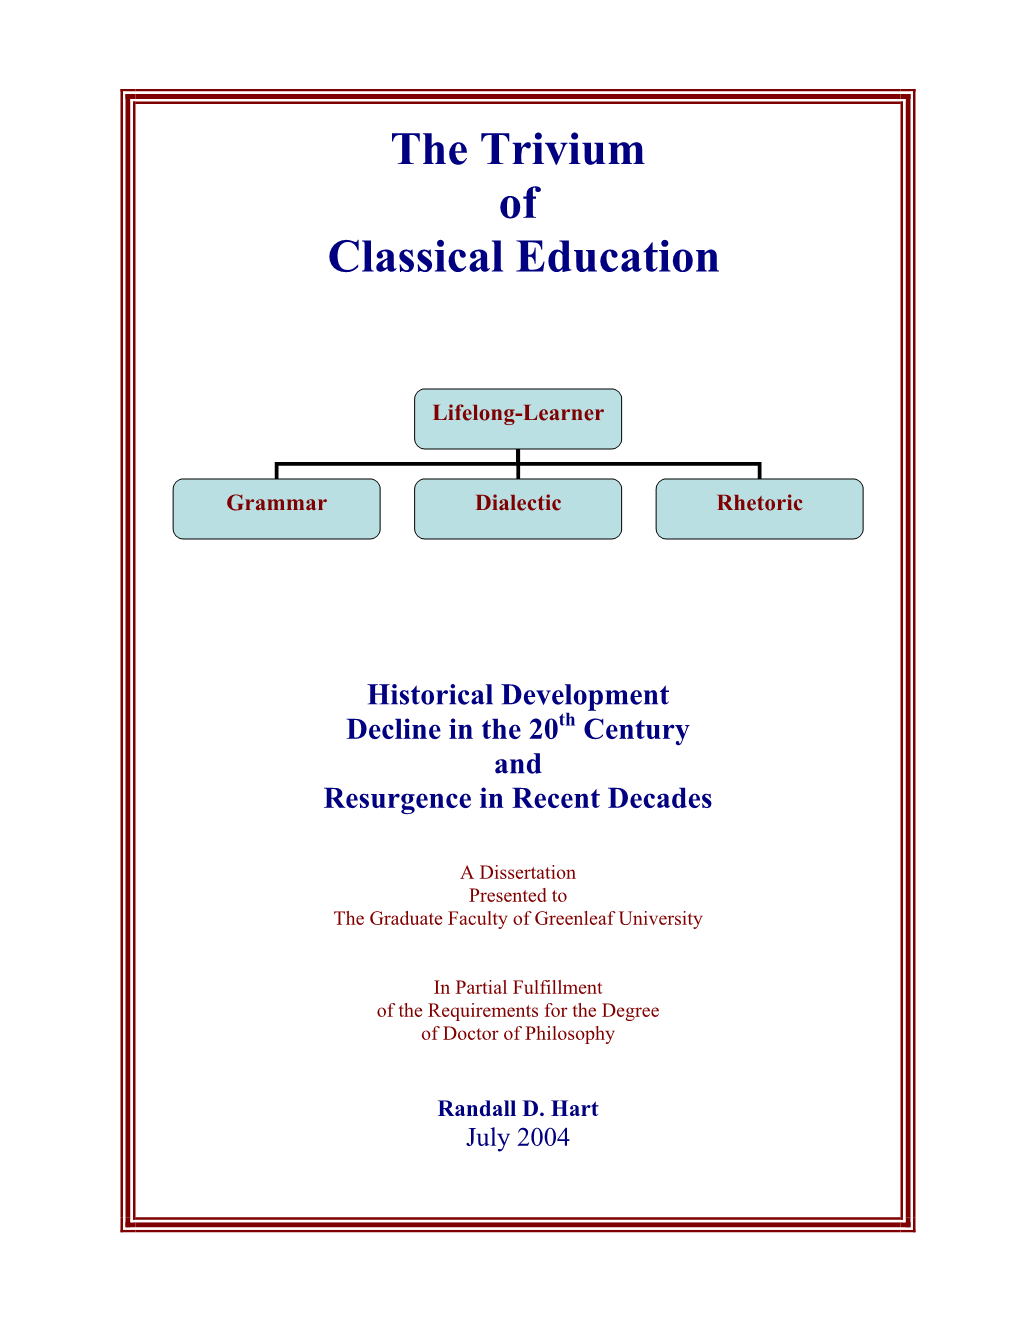 The Trivium of Classical Education